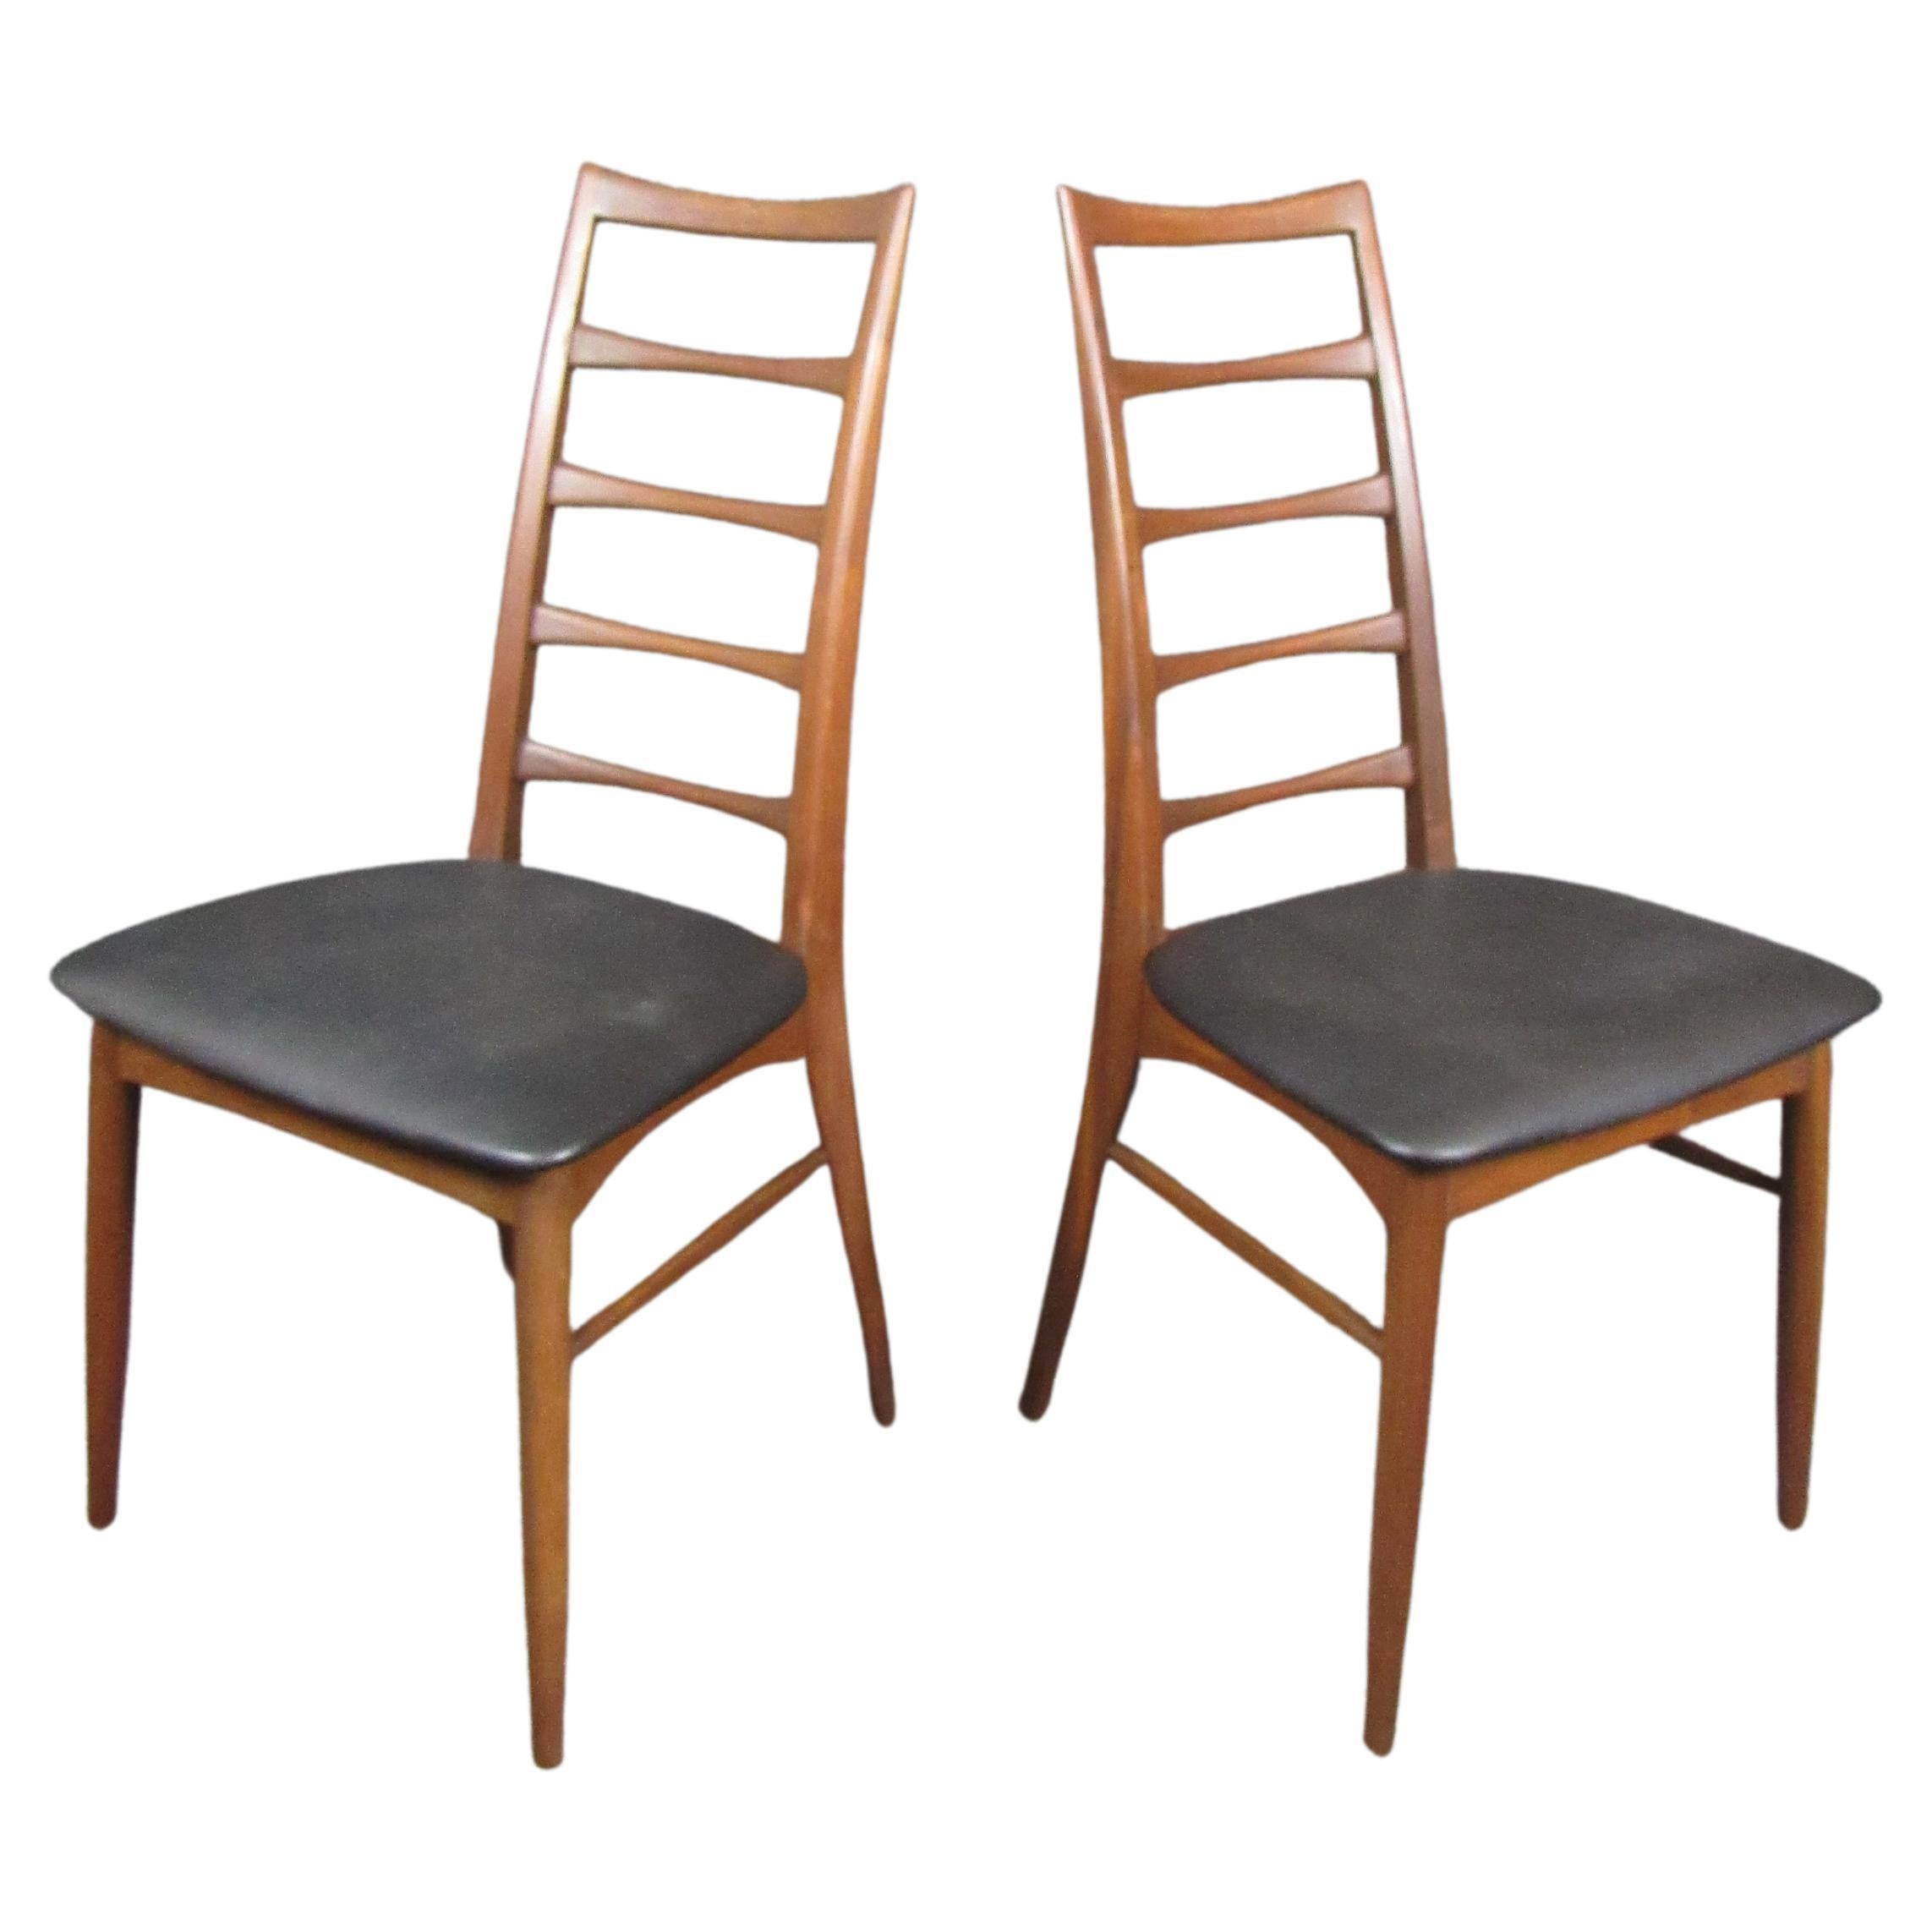 6er-Paar Niels Kofoed-Esszimmerstühle. Stühle mit Leiterlehne aus Teakholz und mattschwarzem Lederpolster. Diese Stühle im Kofoed-Stil sind unübertroffen, wenn es um die dänische Mitte des Jahrhunderts geht. Das Set lässt sich wunderbar mit einem